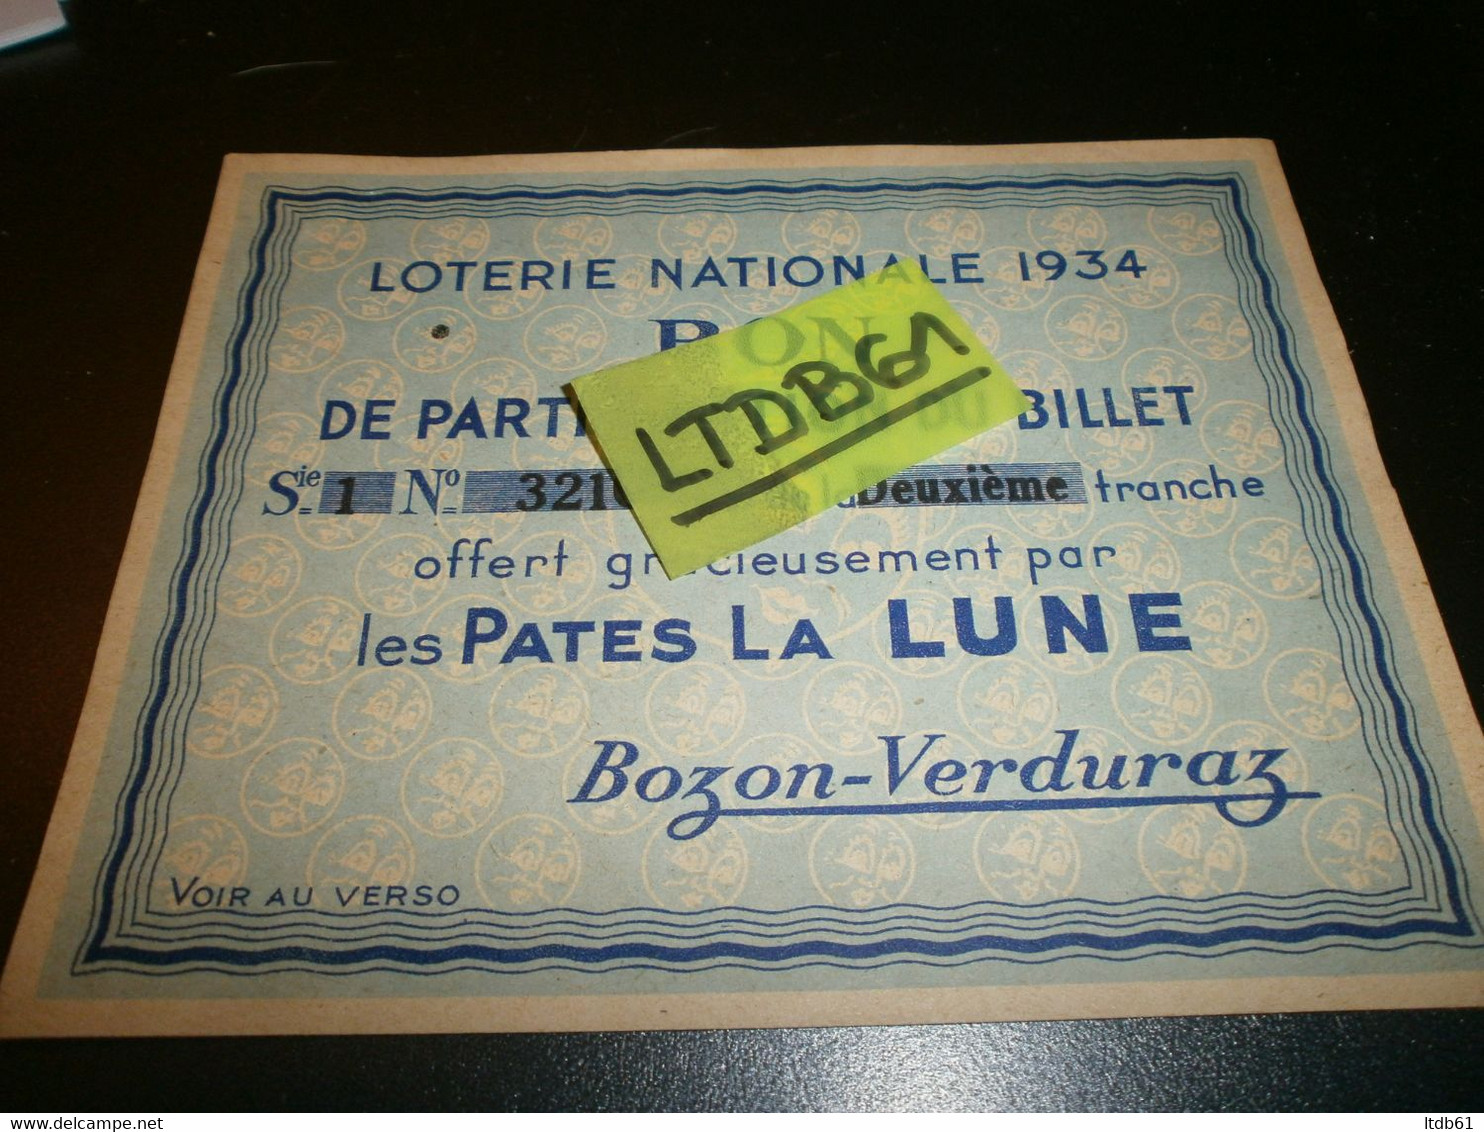 Billets De Loterie Loterie Nationale 1934 Bon De Participation Offert Par Les Pates La Lune Bozon-verduraz - Lottery Tickets